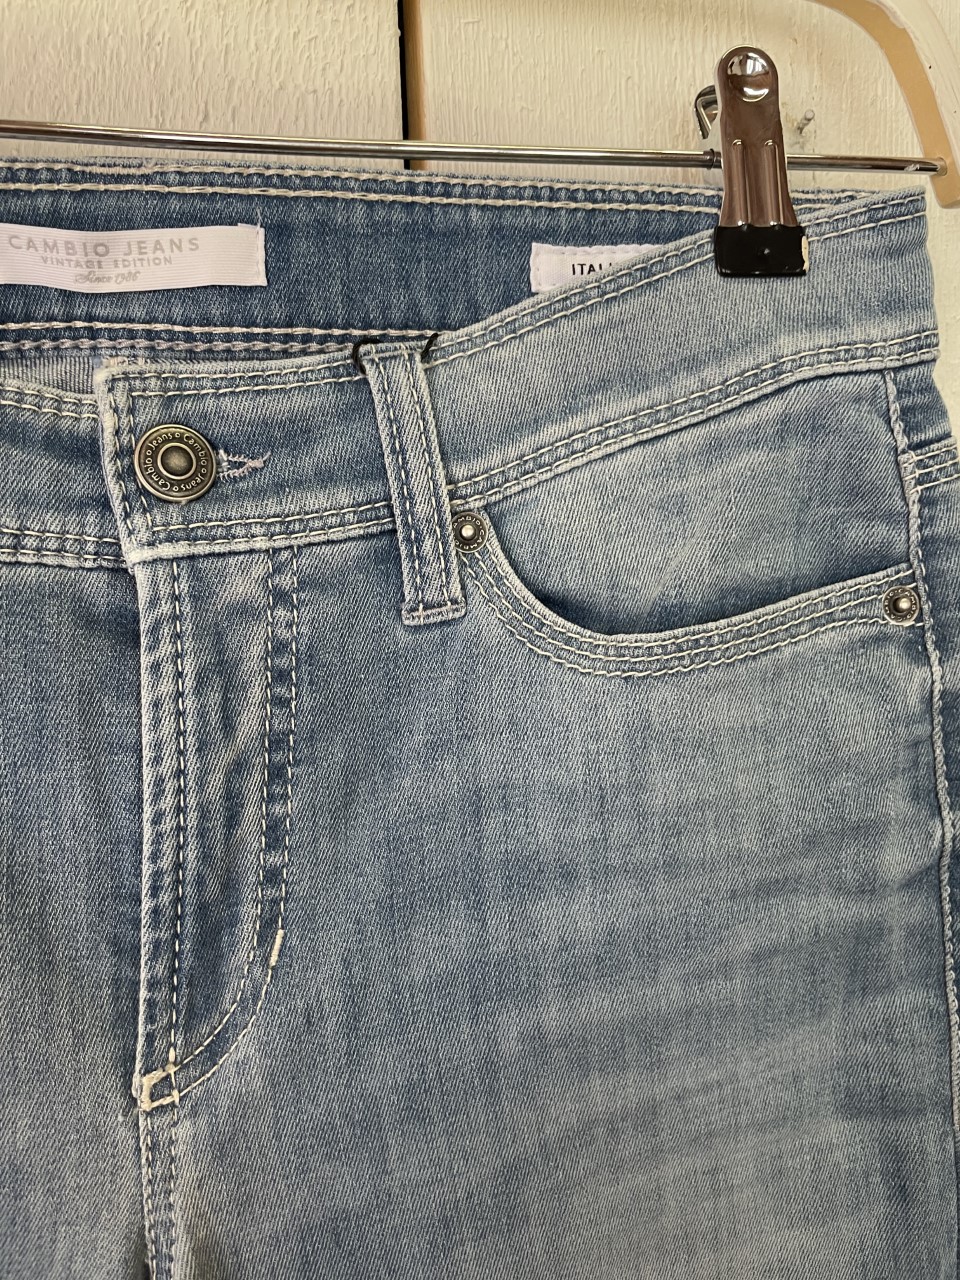 Cambio jeans "Piper Short" , ljusblå tunn